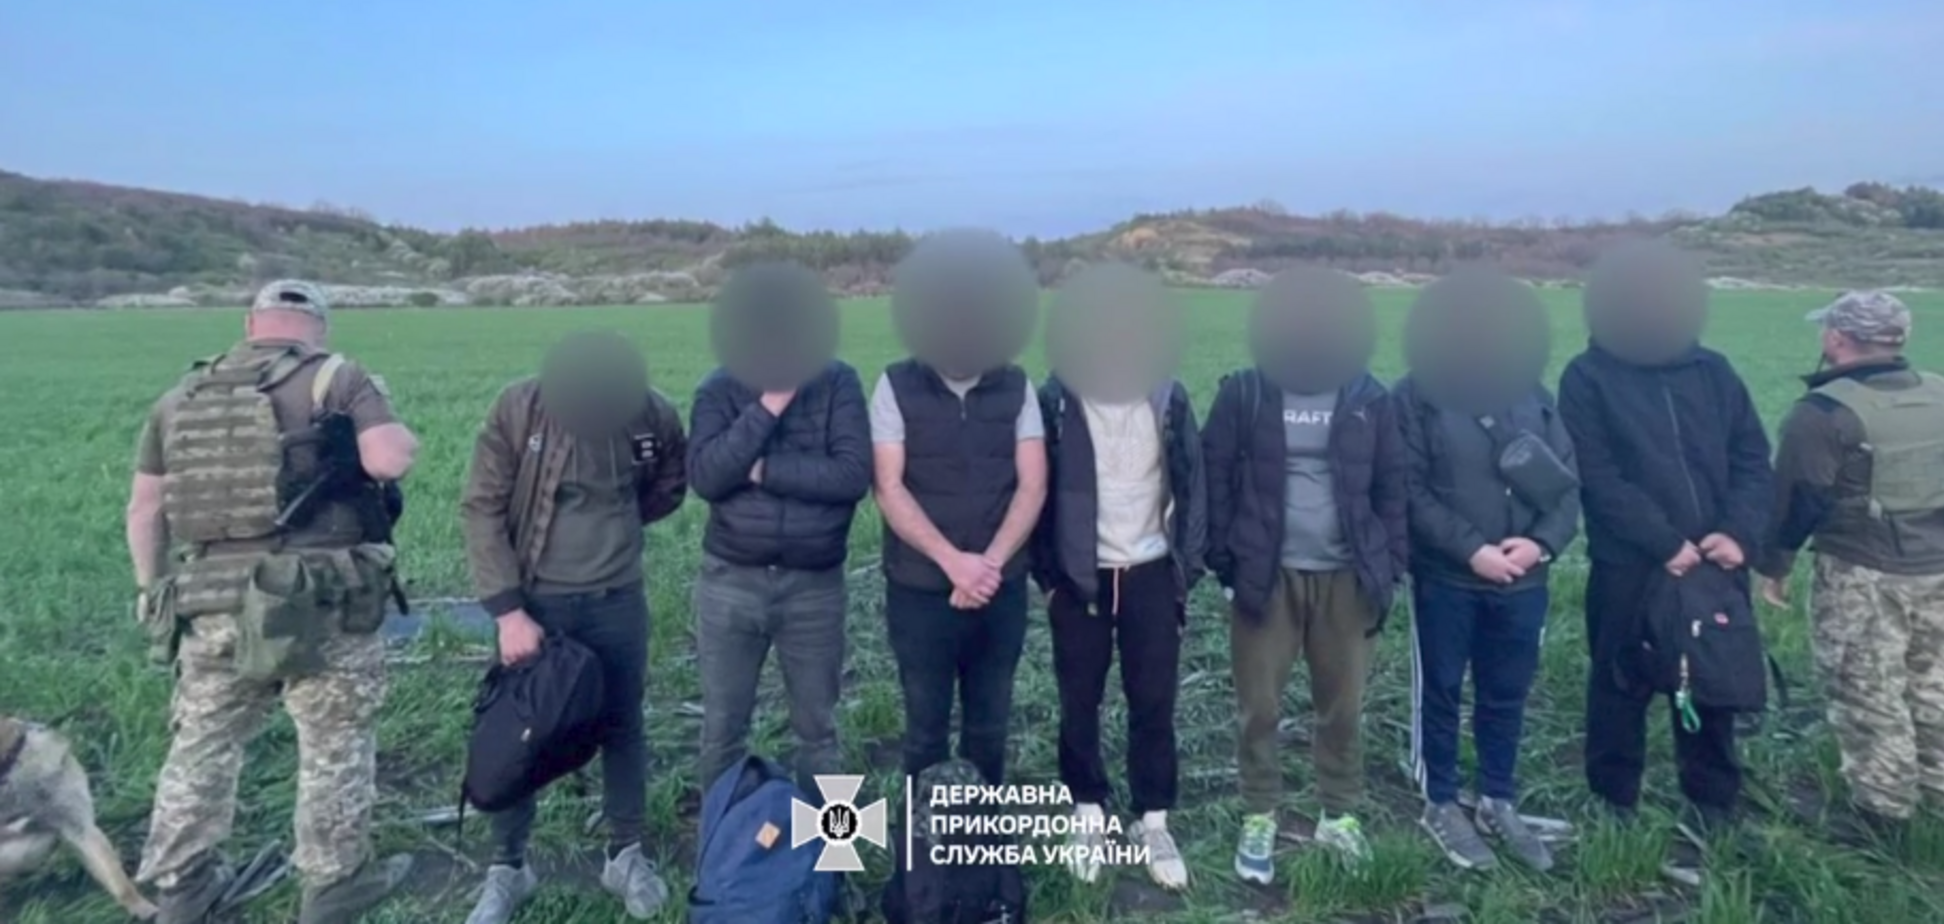 Должны были оплатить 'маршрут' по 80 тыс. грн: в Одесской области задержали мужчин, которые пытались незаконно попасть в Молдову. Видео